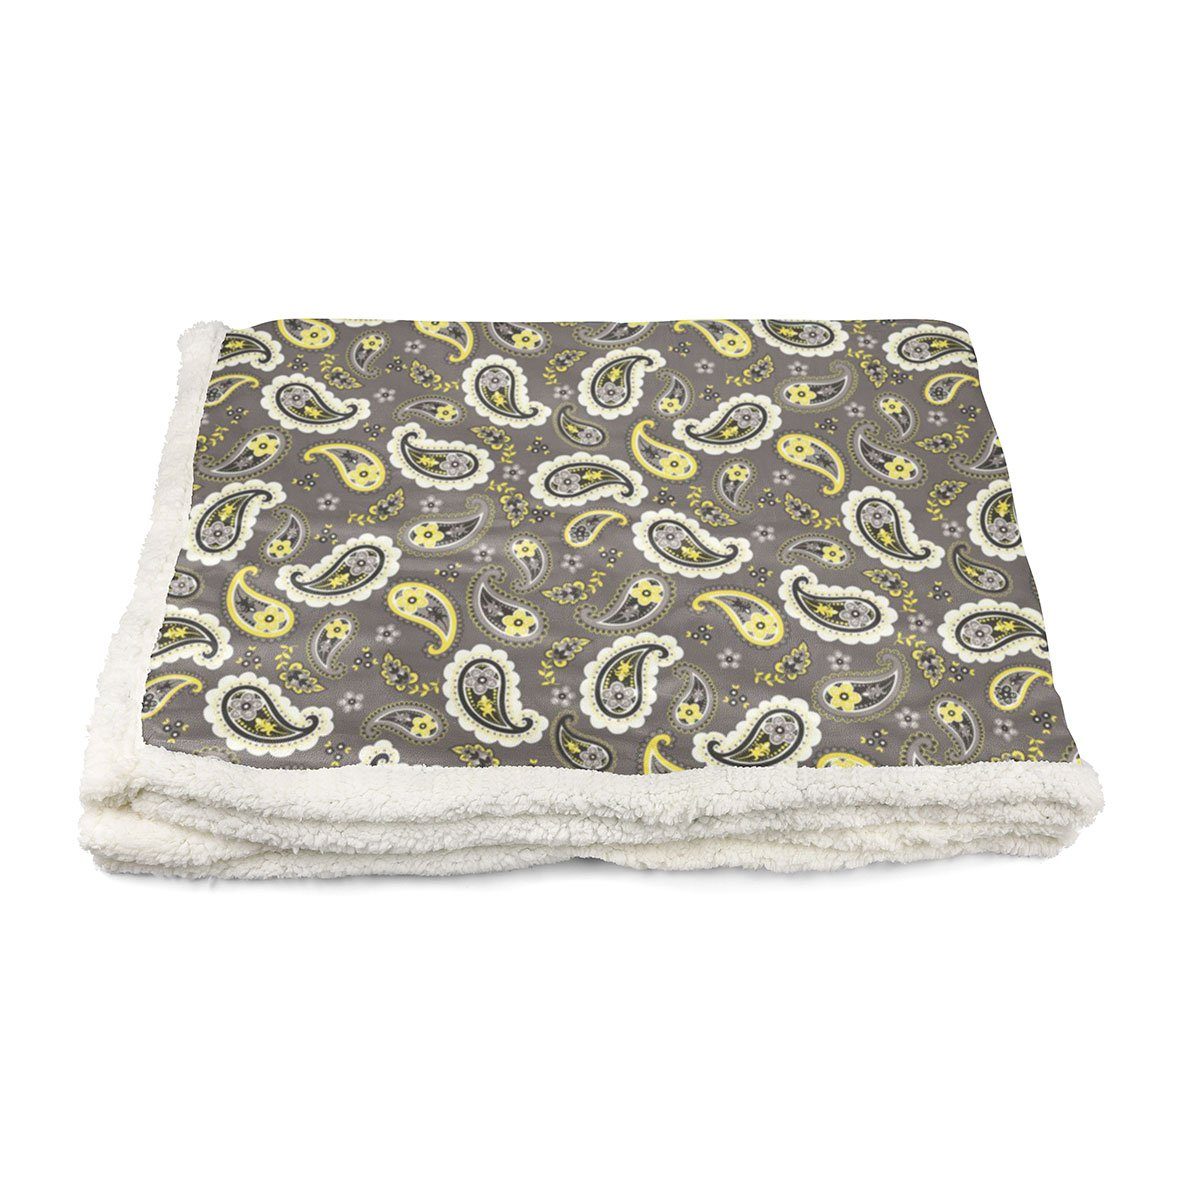 Cuddle Dog Blanket in Paisley Lemon | Pawlicious & Company